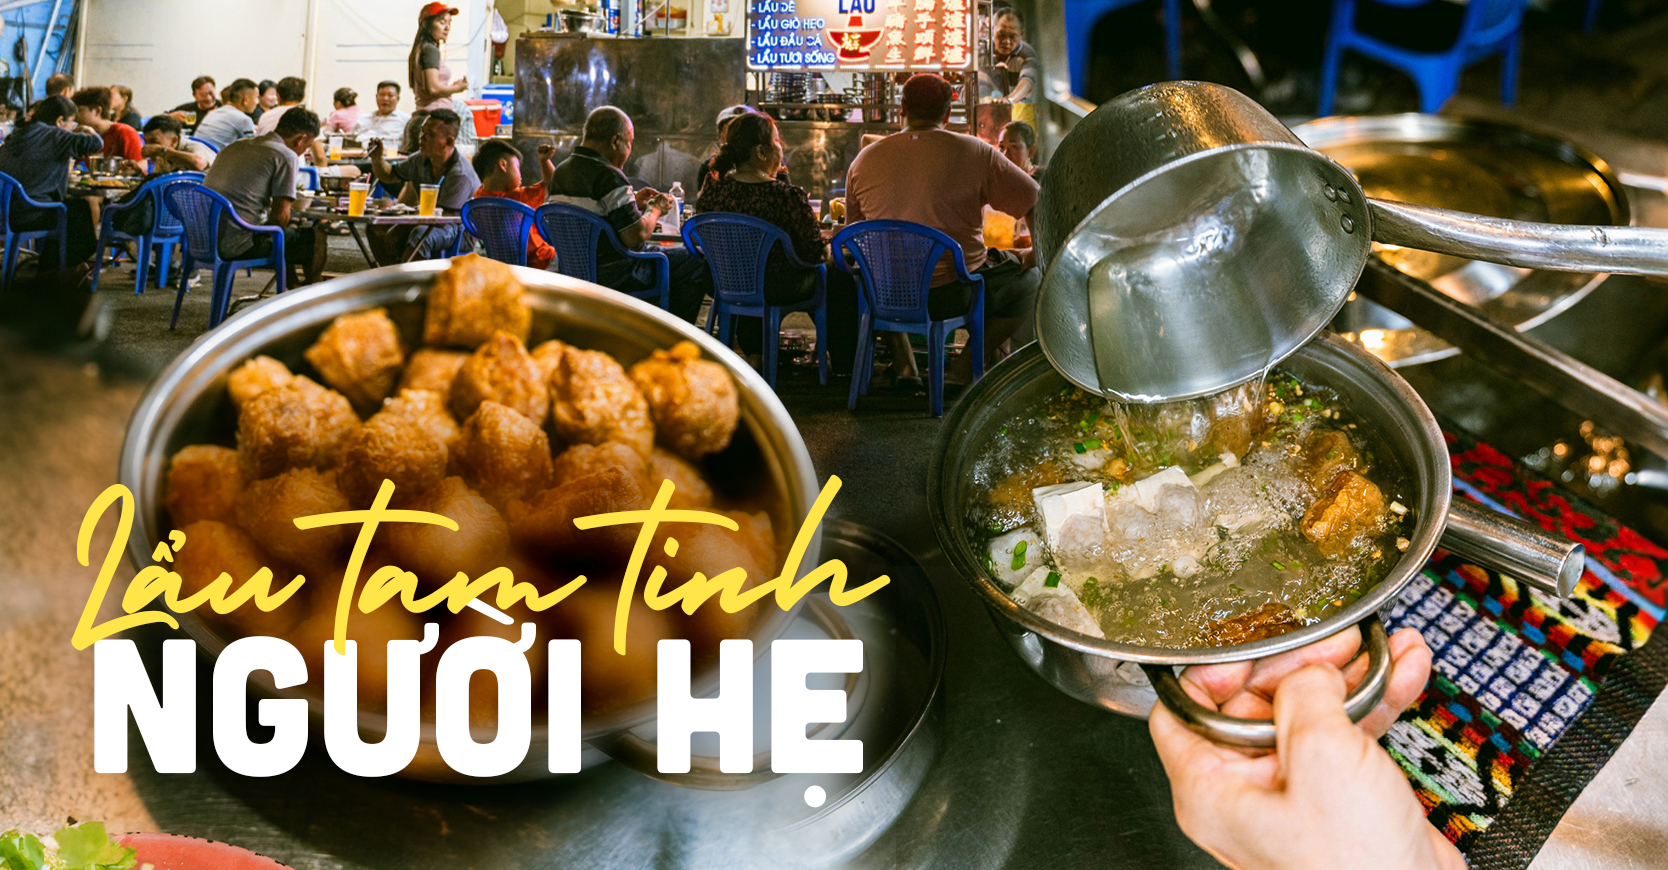 Tiệm lẩu tam tinh người Hẹ tuổi đời hơn 40 năm ở khu Chợ Lớn: Quán vỉa hè giá cao, đồ ăn đơn giản nhưng khách vẫn nườm nượp đến- Ảnh 1.